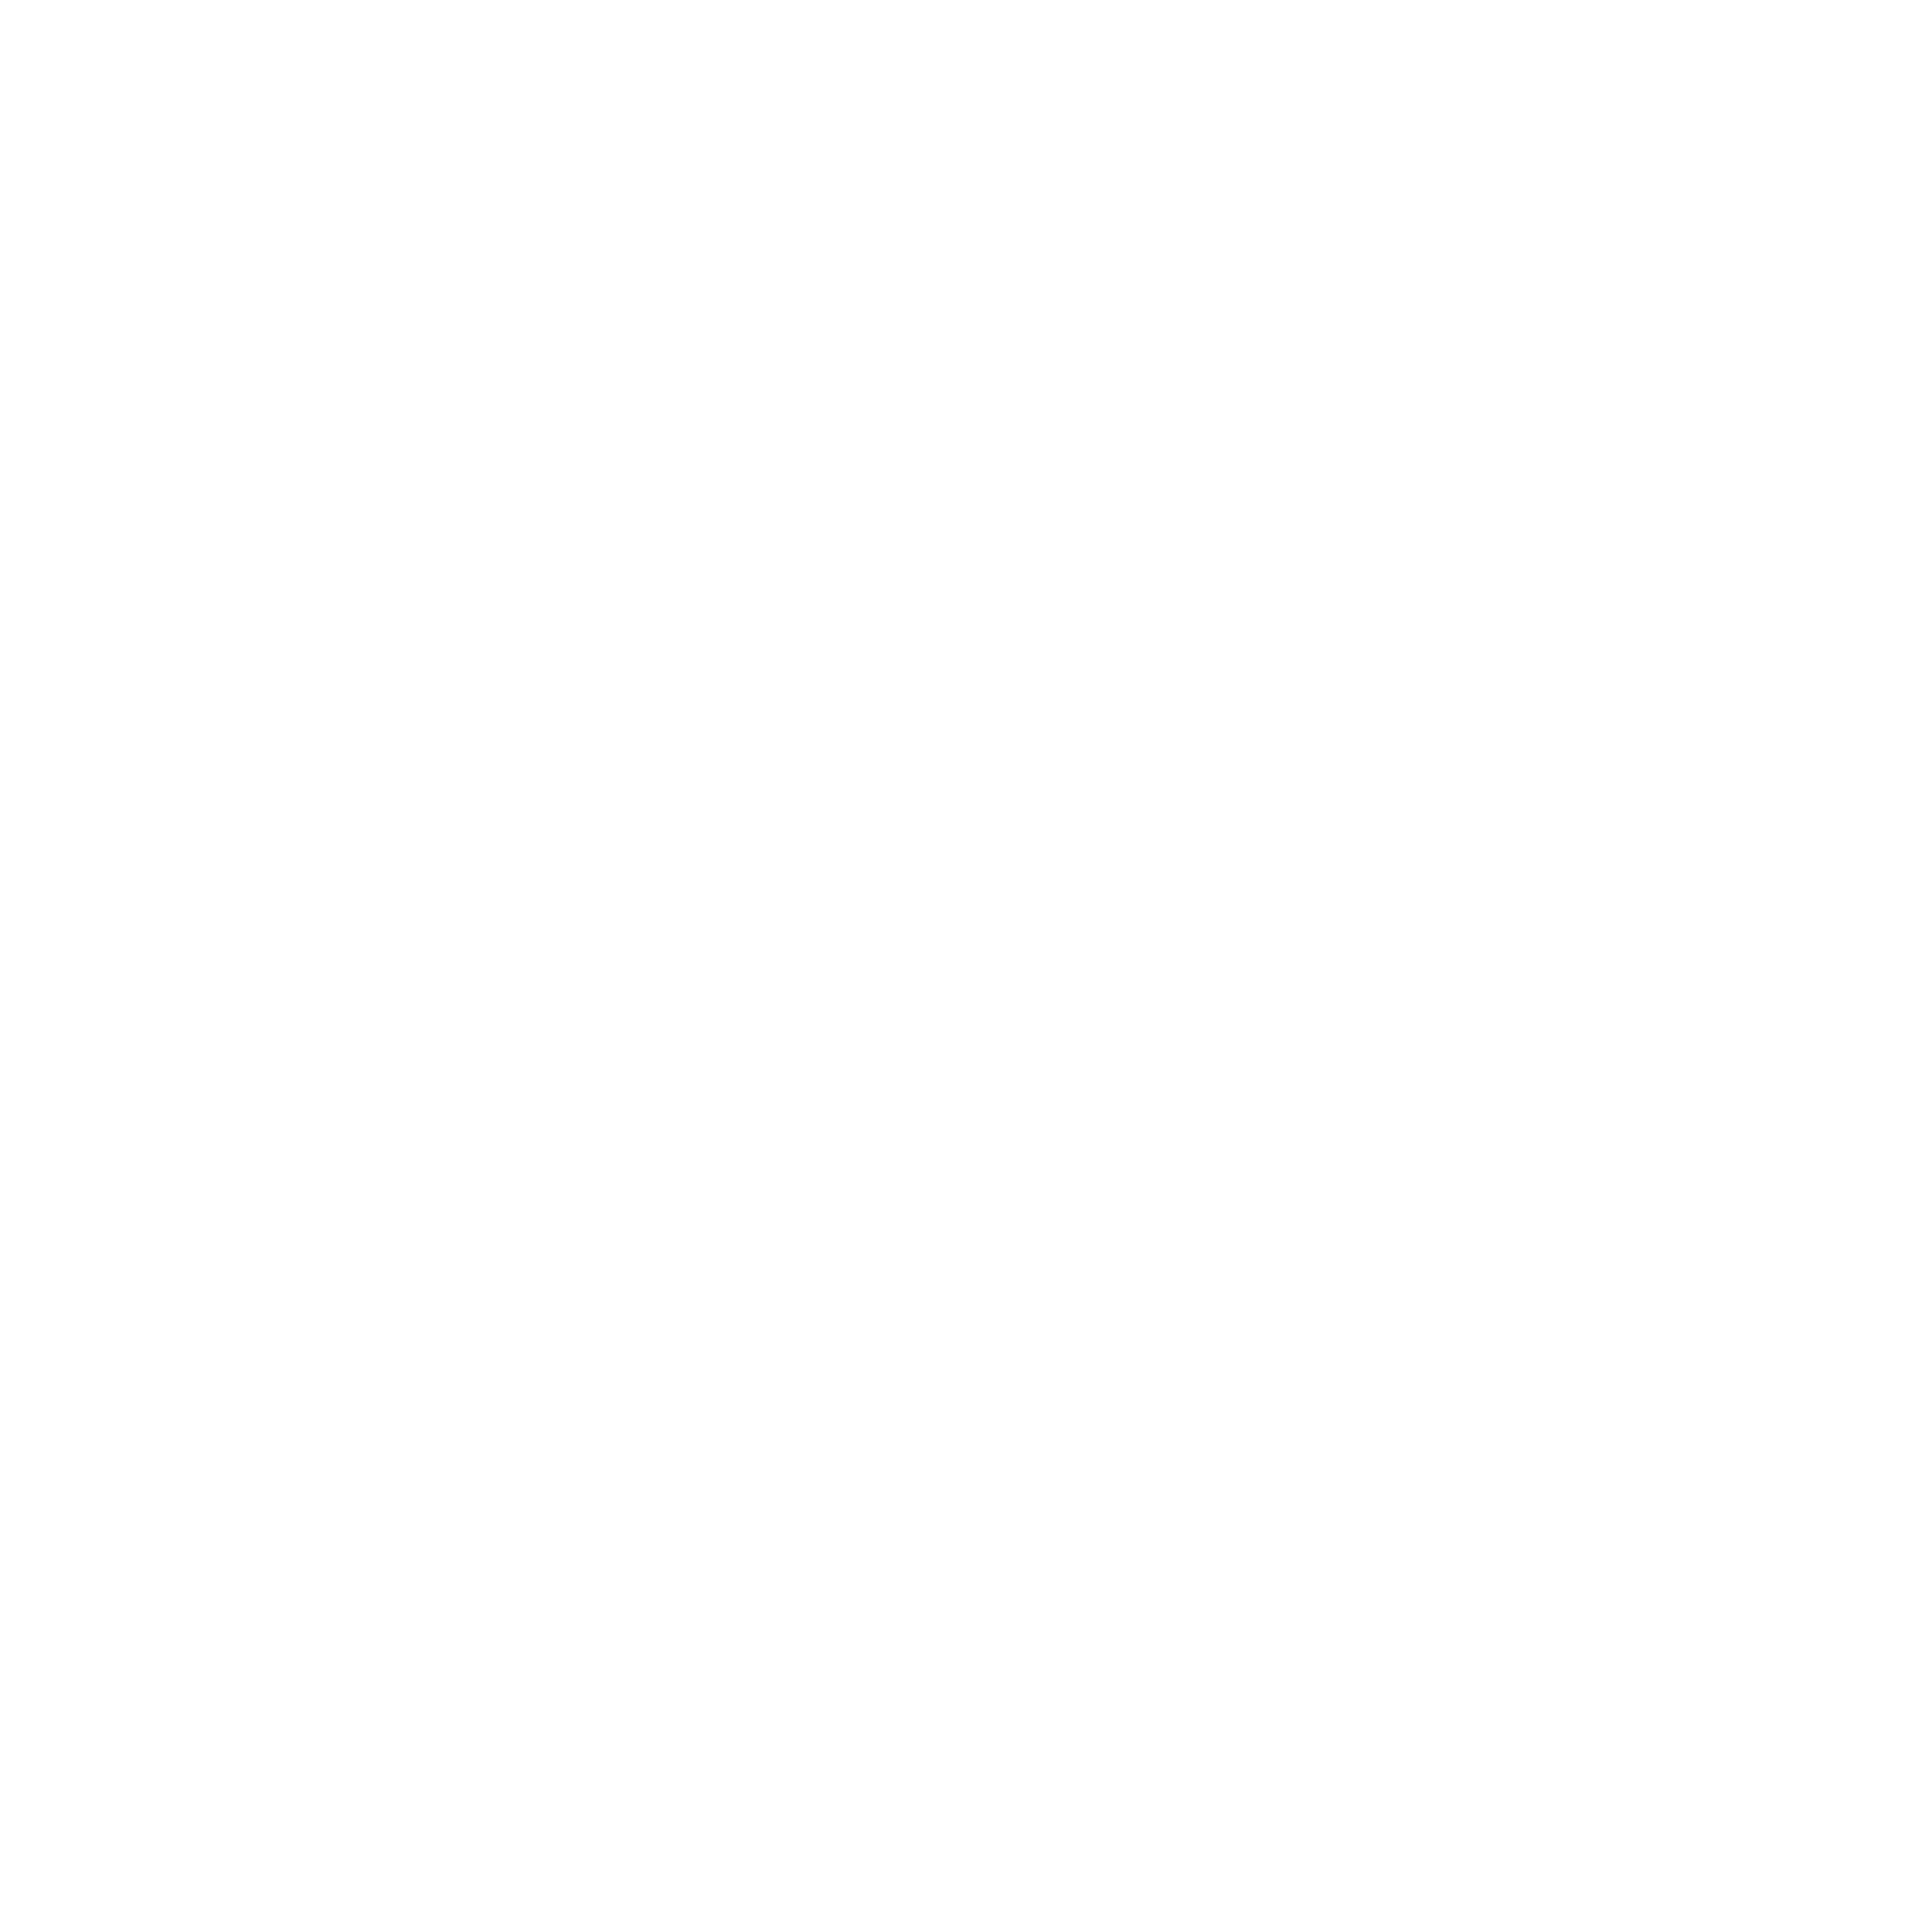 Wena TV